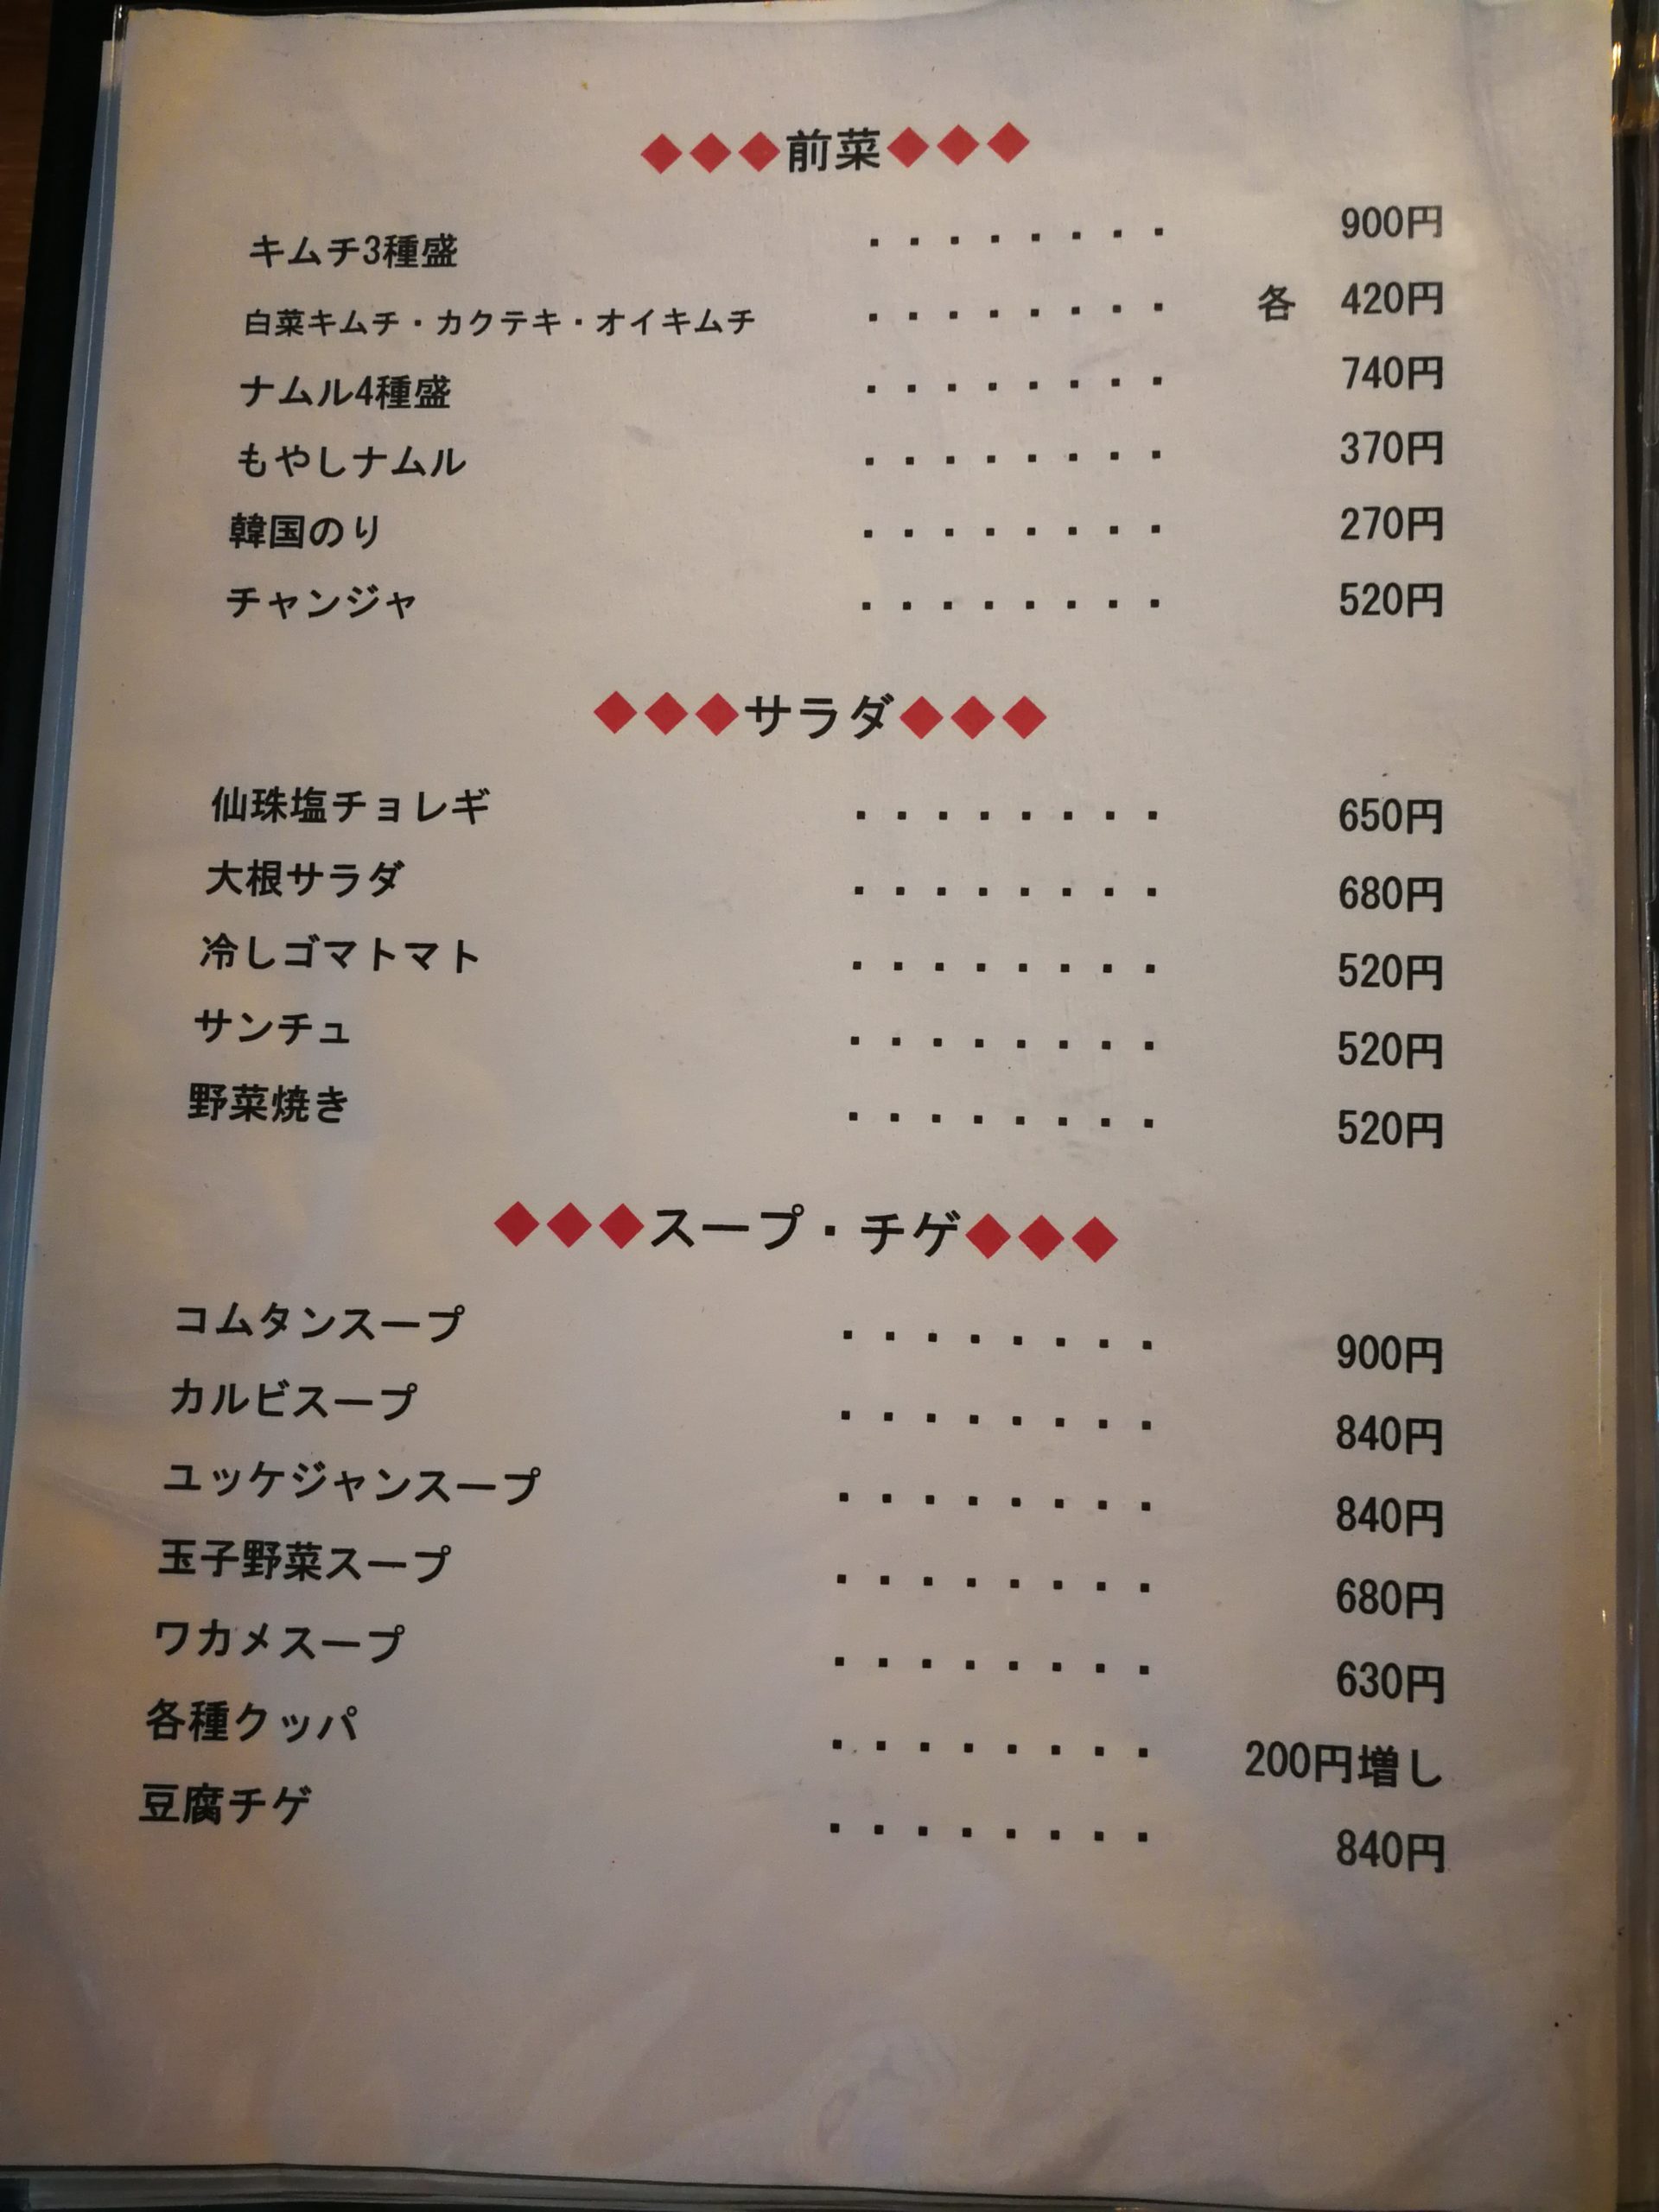 senjyu-yakiniku-menu-05